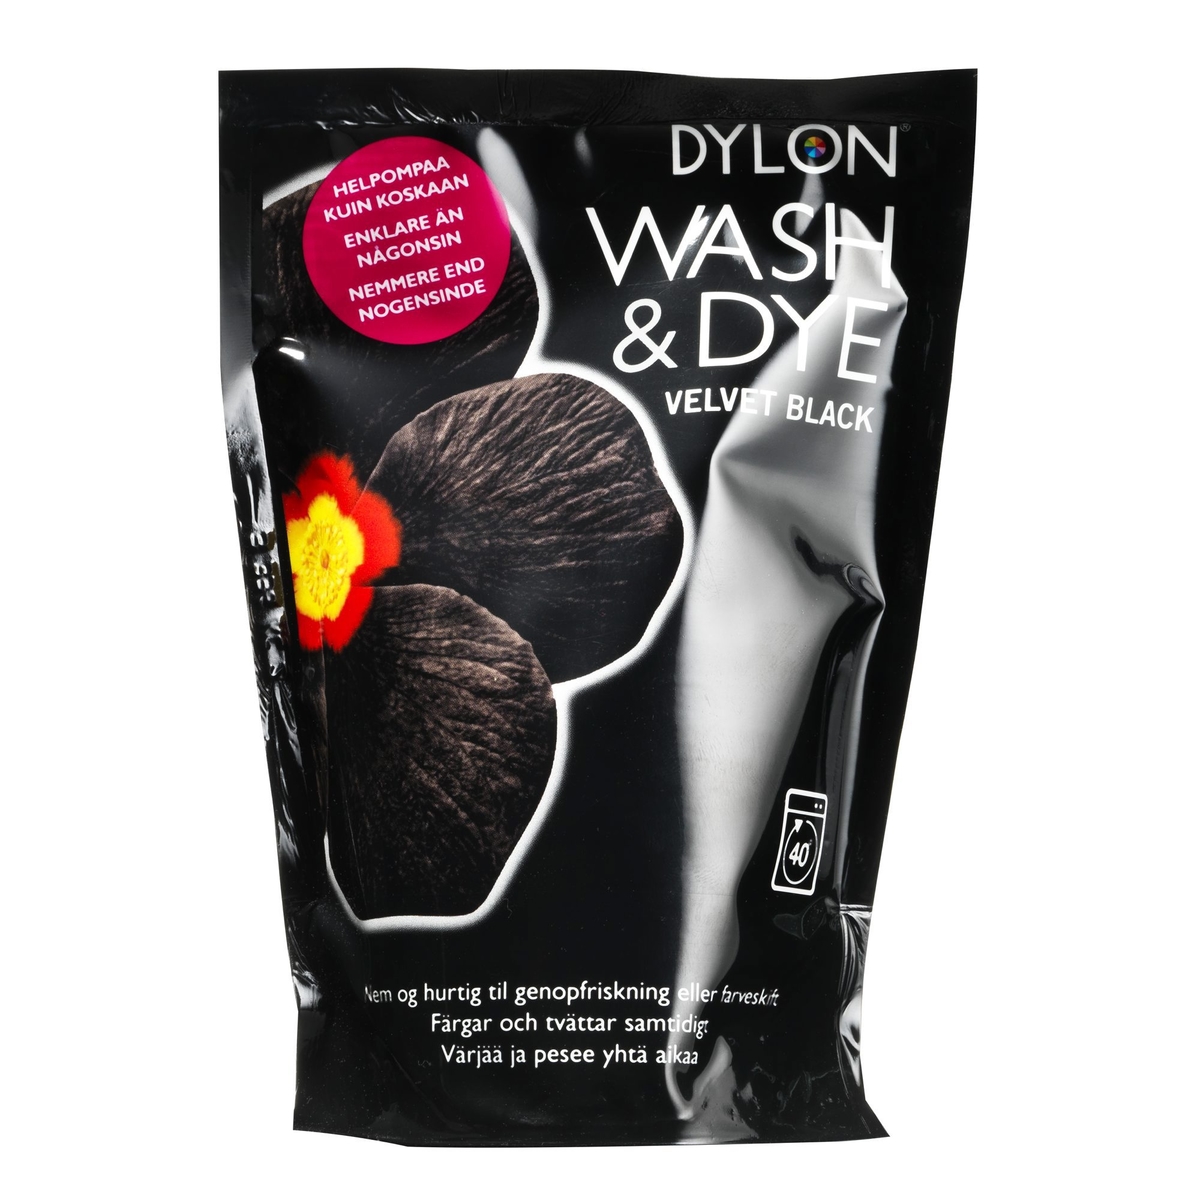 Dylon wash & dye black